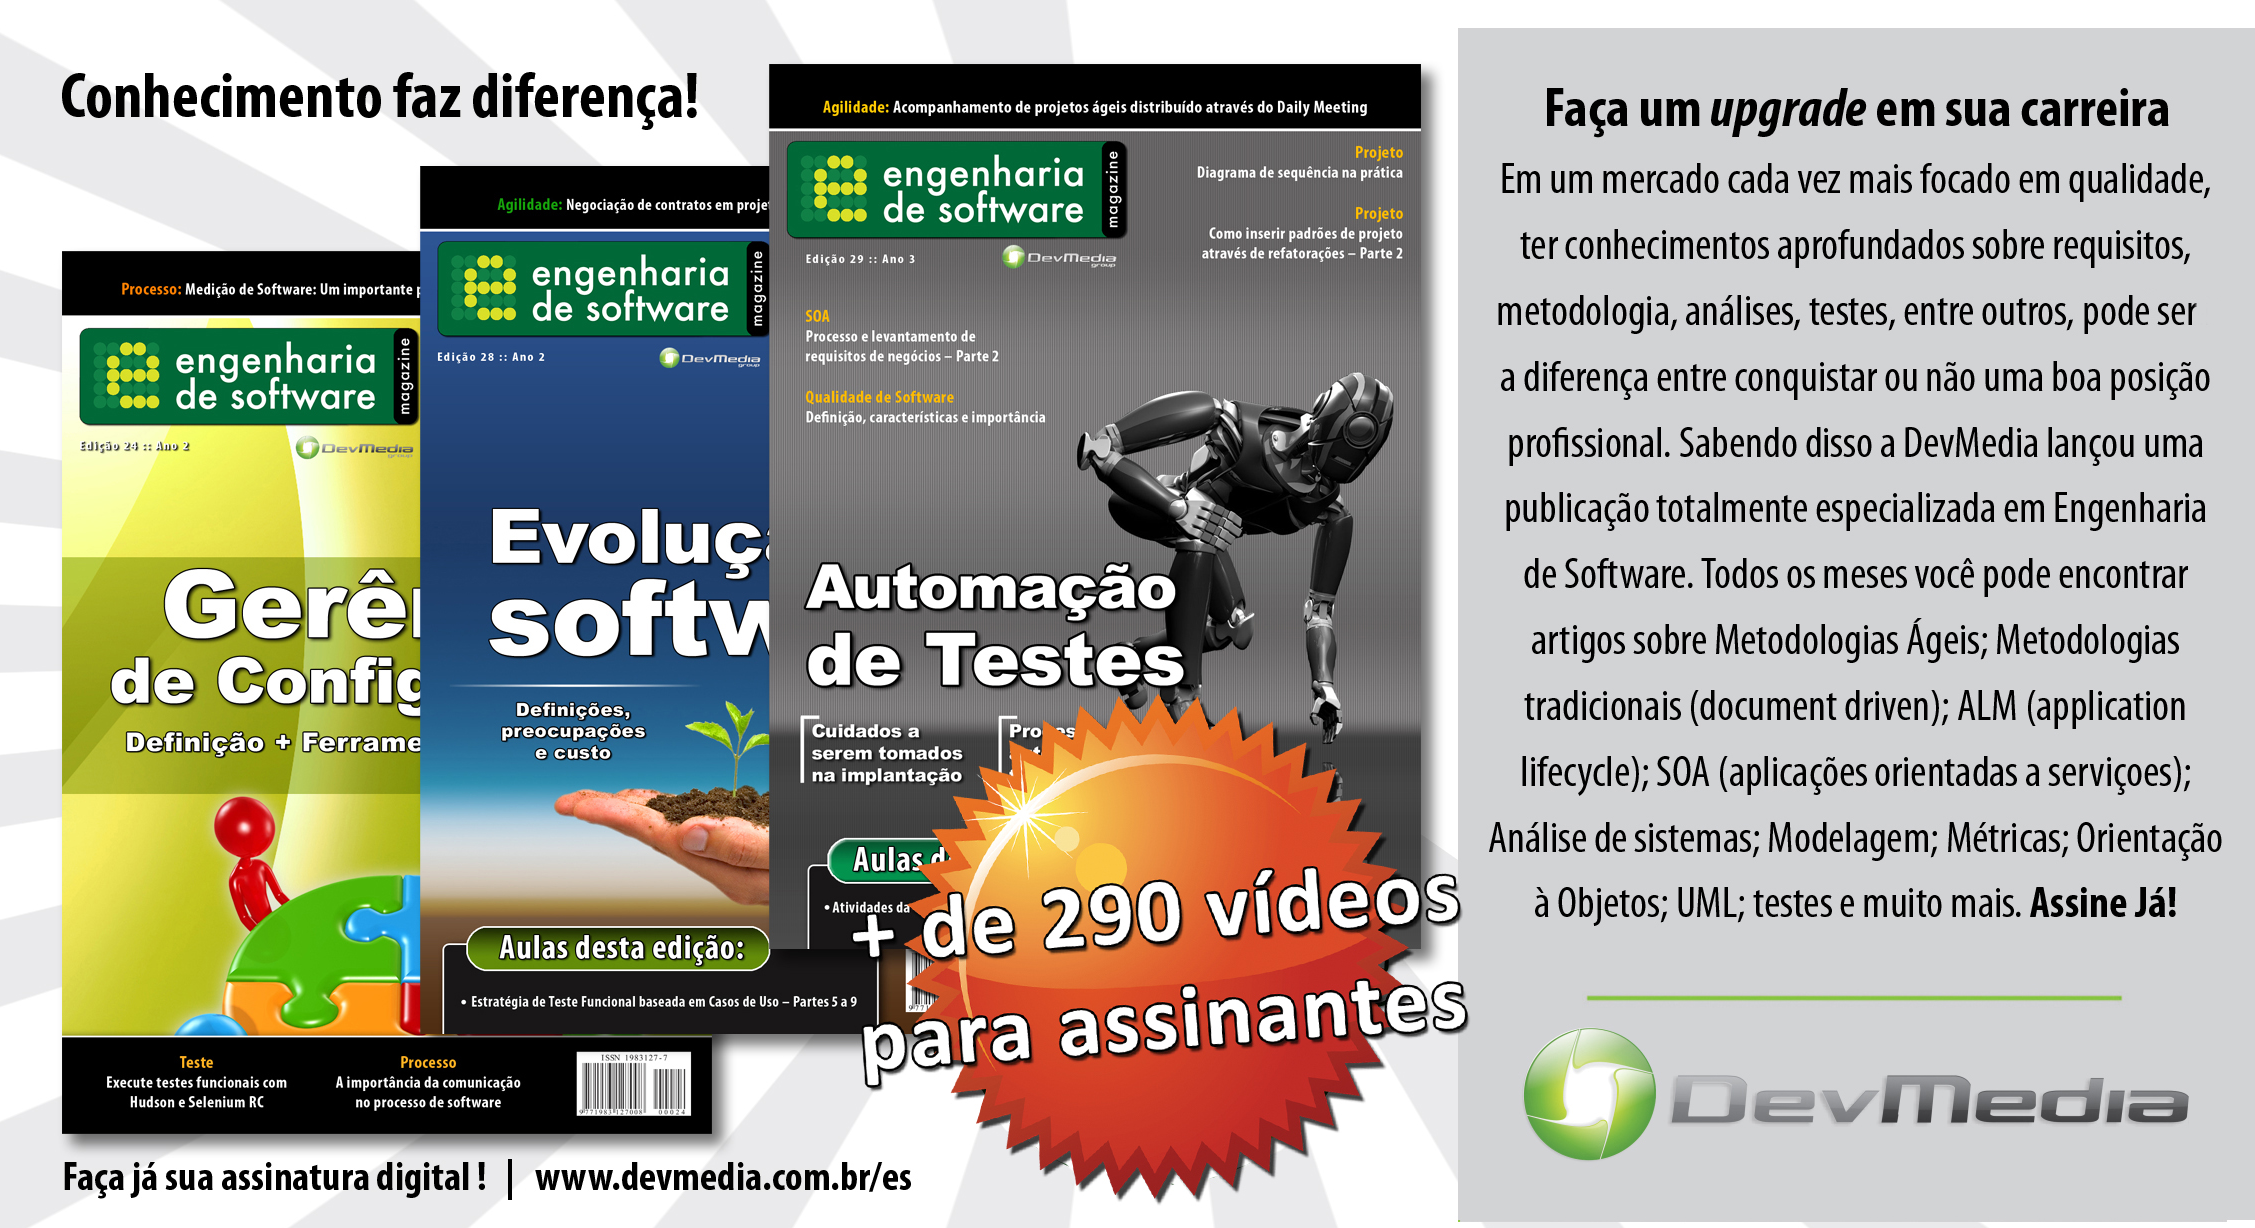 10 Zanoni, R. (2002). Modelo de Gerência de Projeto Baseado no PMI para ambientes de Desenvolvimento de Software Fisicamente Distribuído. Dissertação de Mestrado, PUC/RS, Porto Alegre, RS, Brasil.